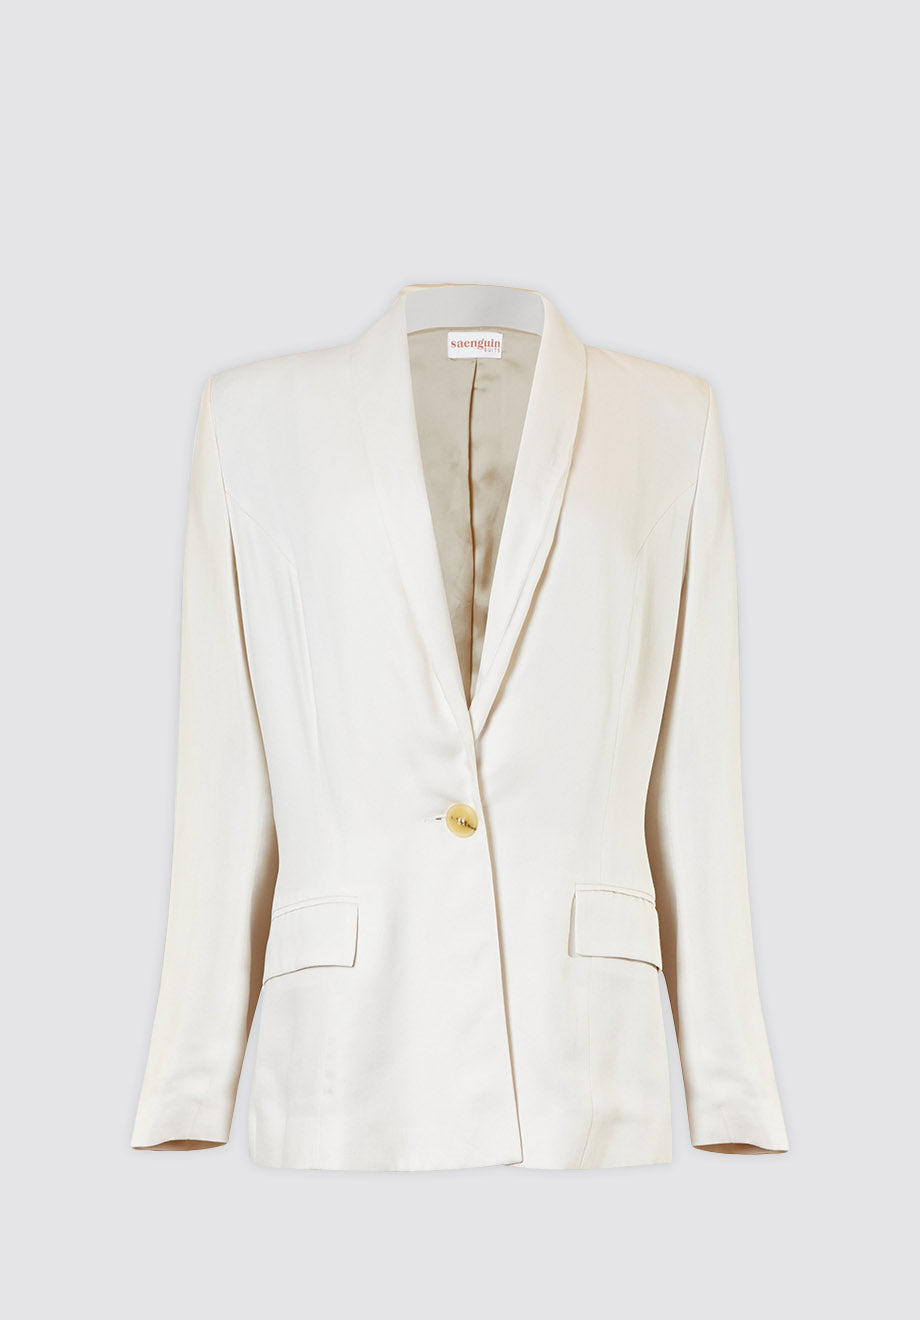 White Suit Tuxedo Jacket - Limited Edition